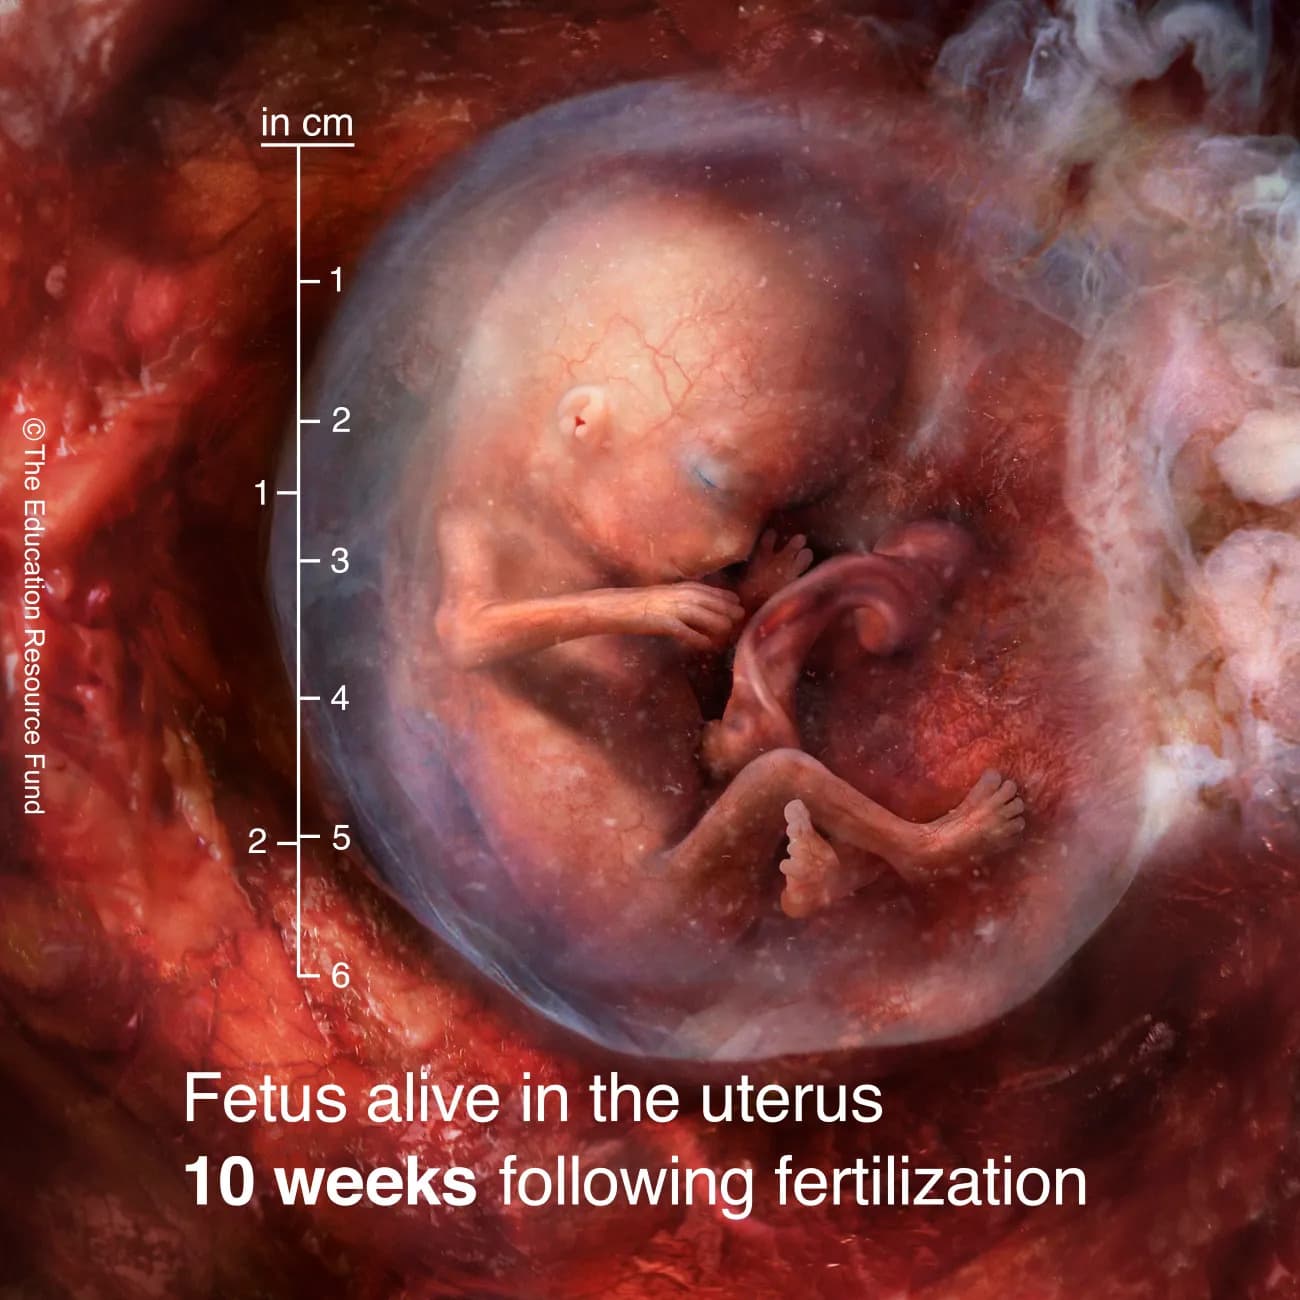 Fetus alive in the uterus 10 weeks following fertilization